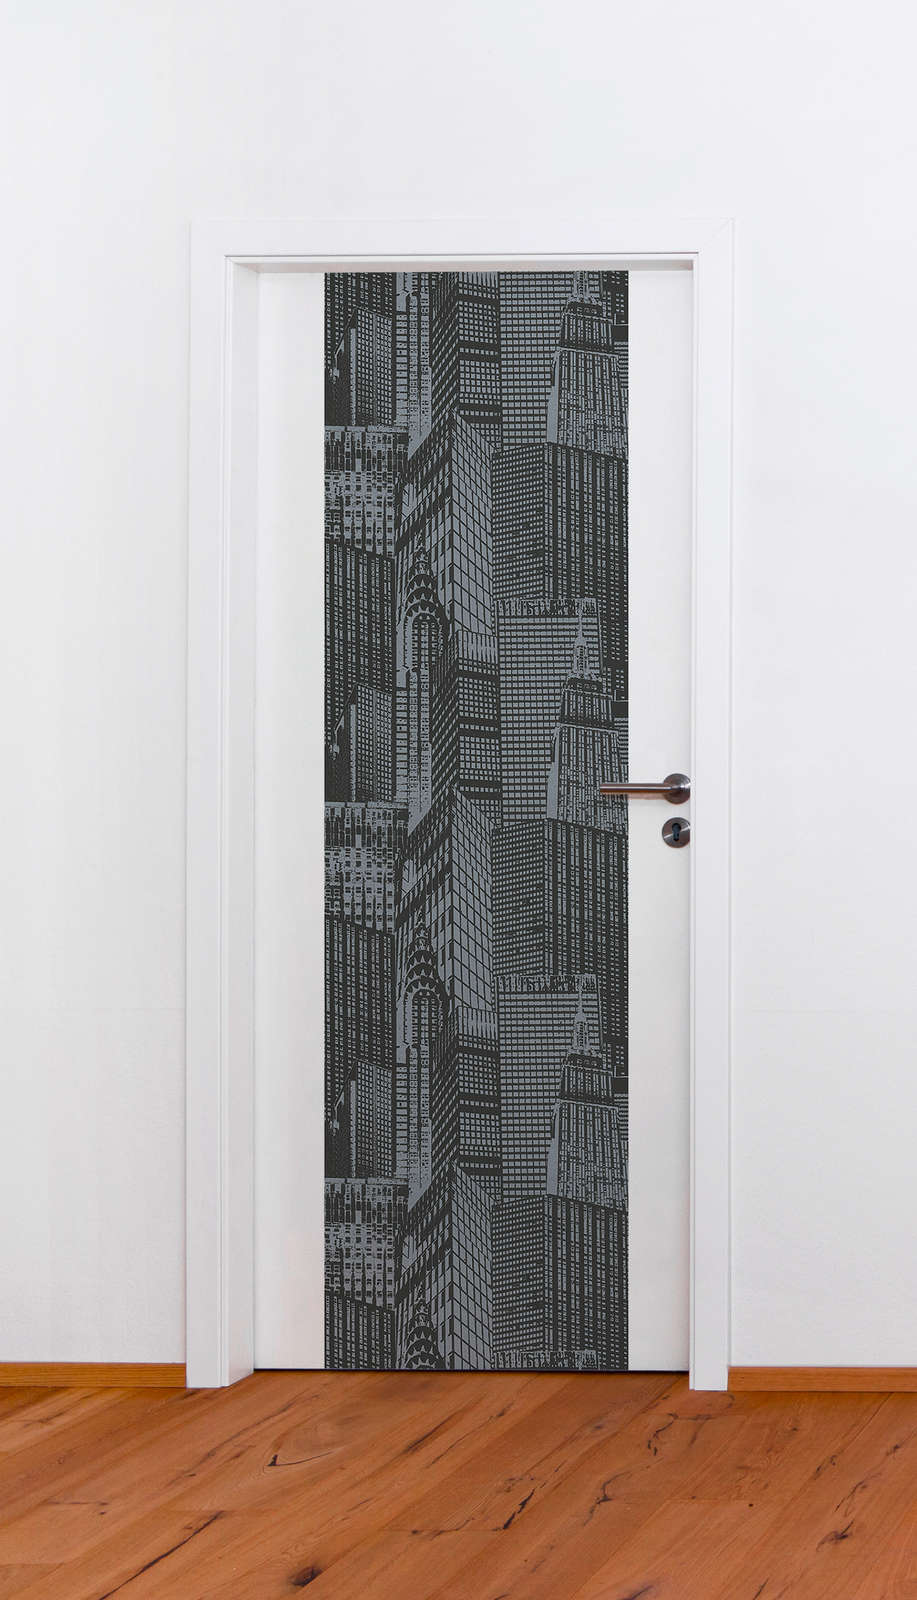             Pannello di carta da parati New York skyline autoadesivo - grigio, nero
        